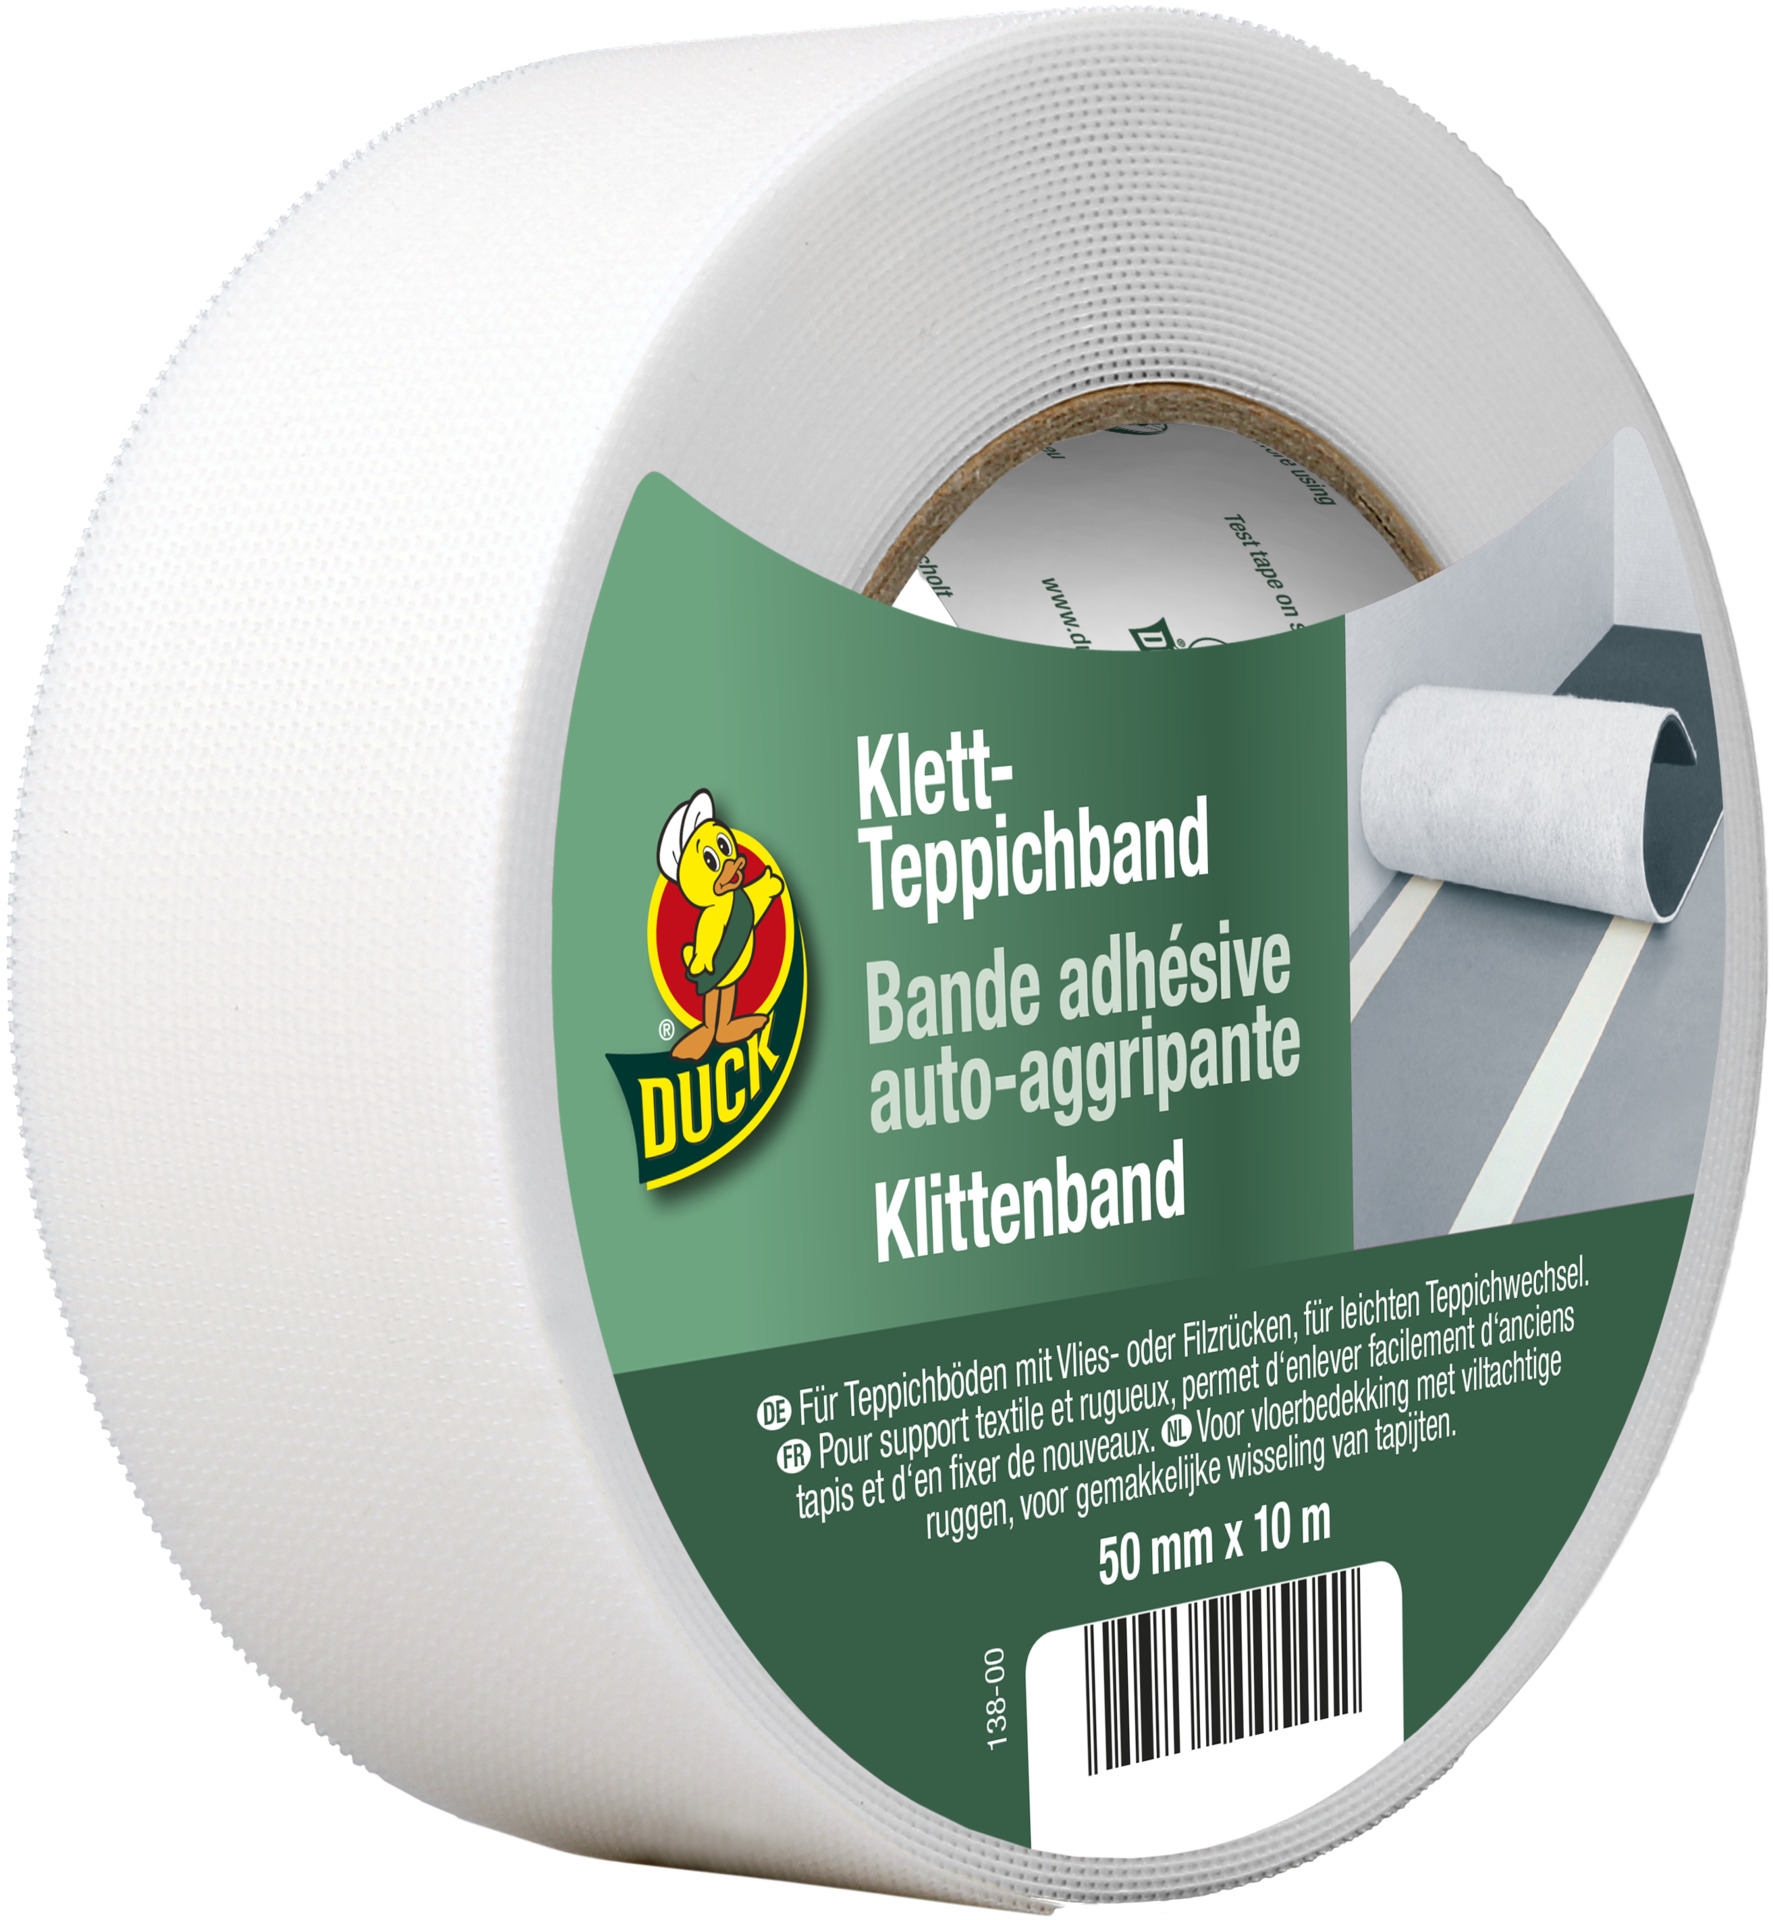 Klett- Teppichband